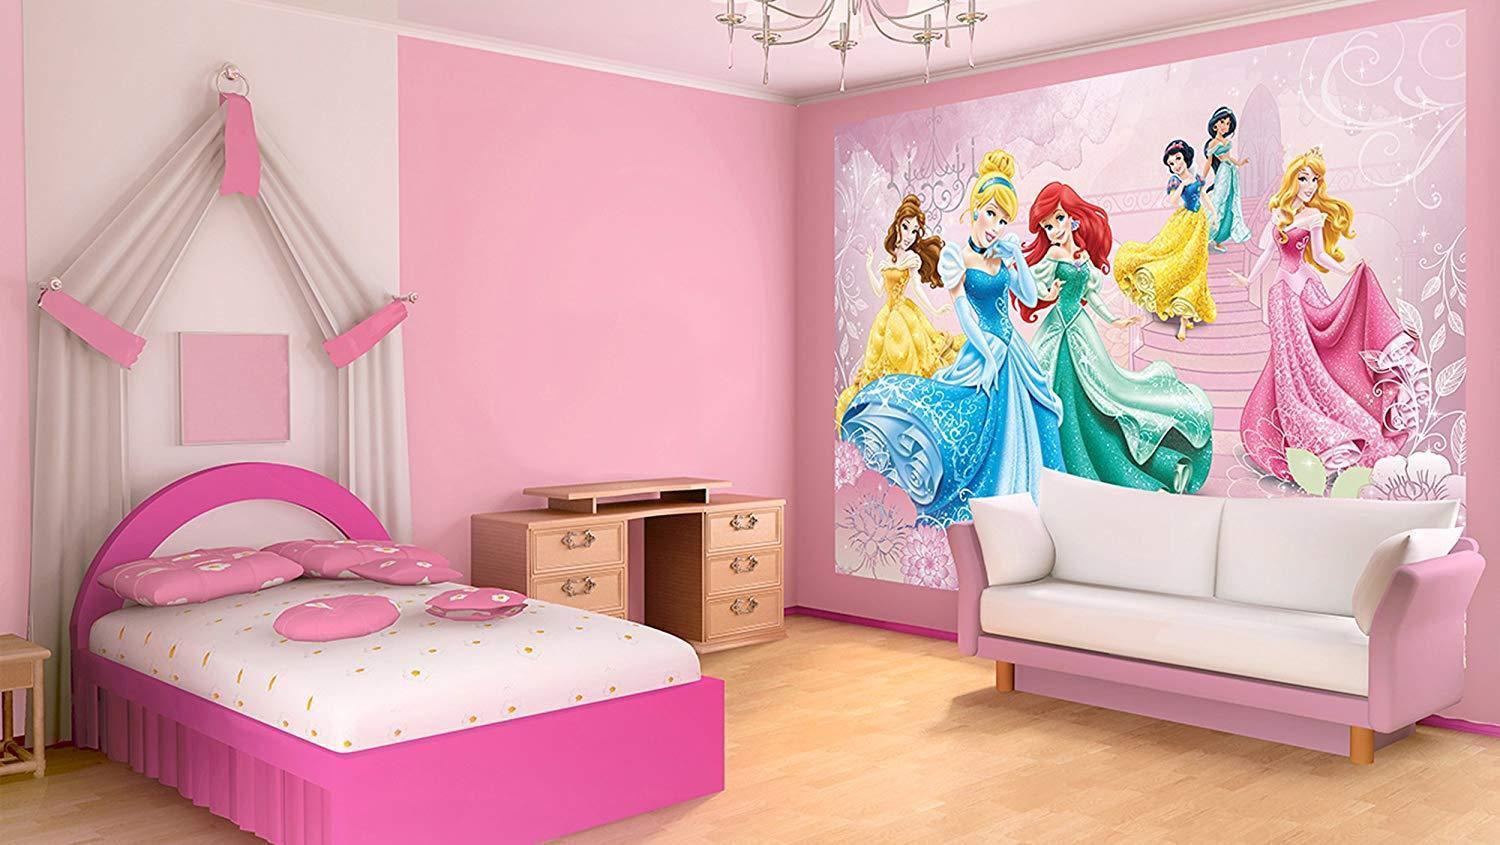 Детская принцесса. Комната принцессы. Детская комната в стиле принцессы. Комната принцессы для девочки. Фотообои для детской комнаты девочке.